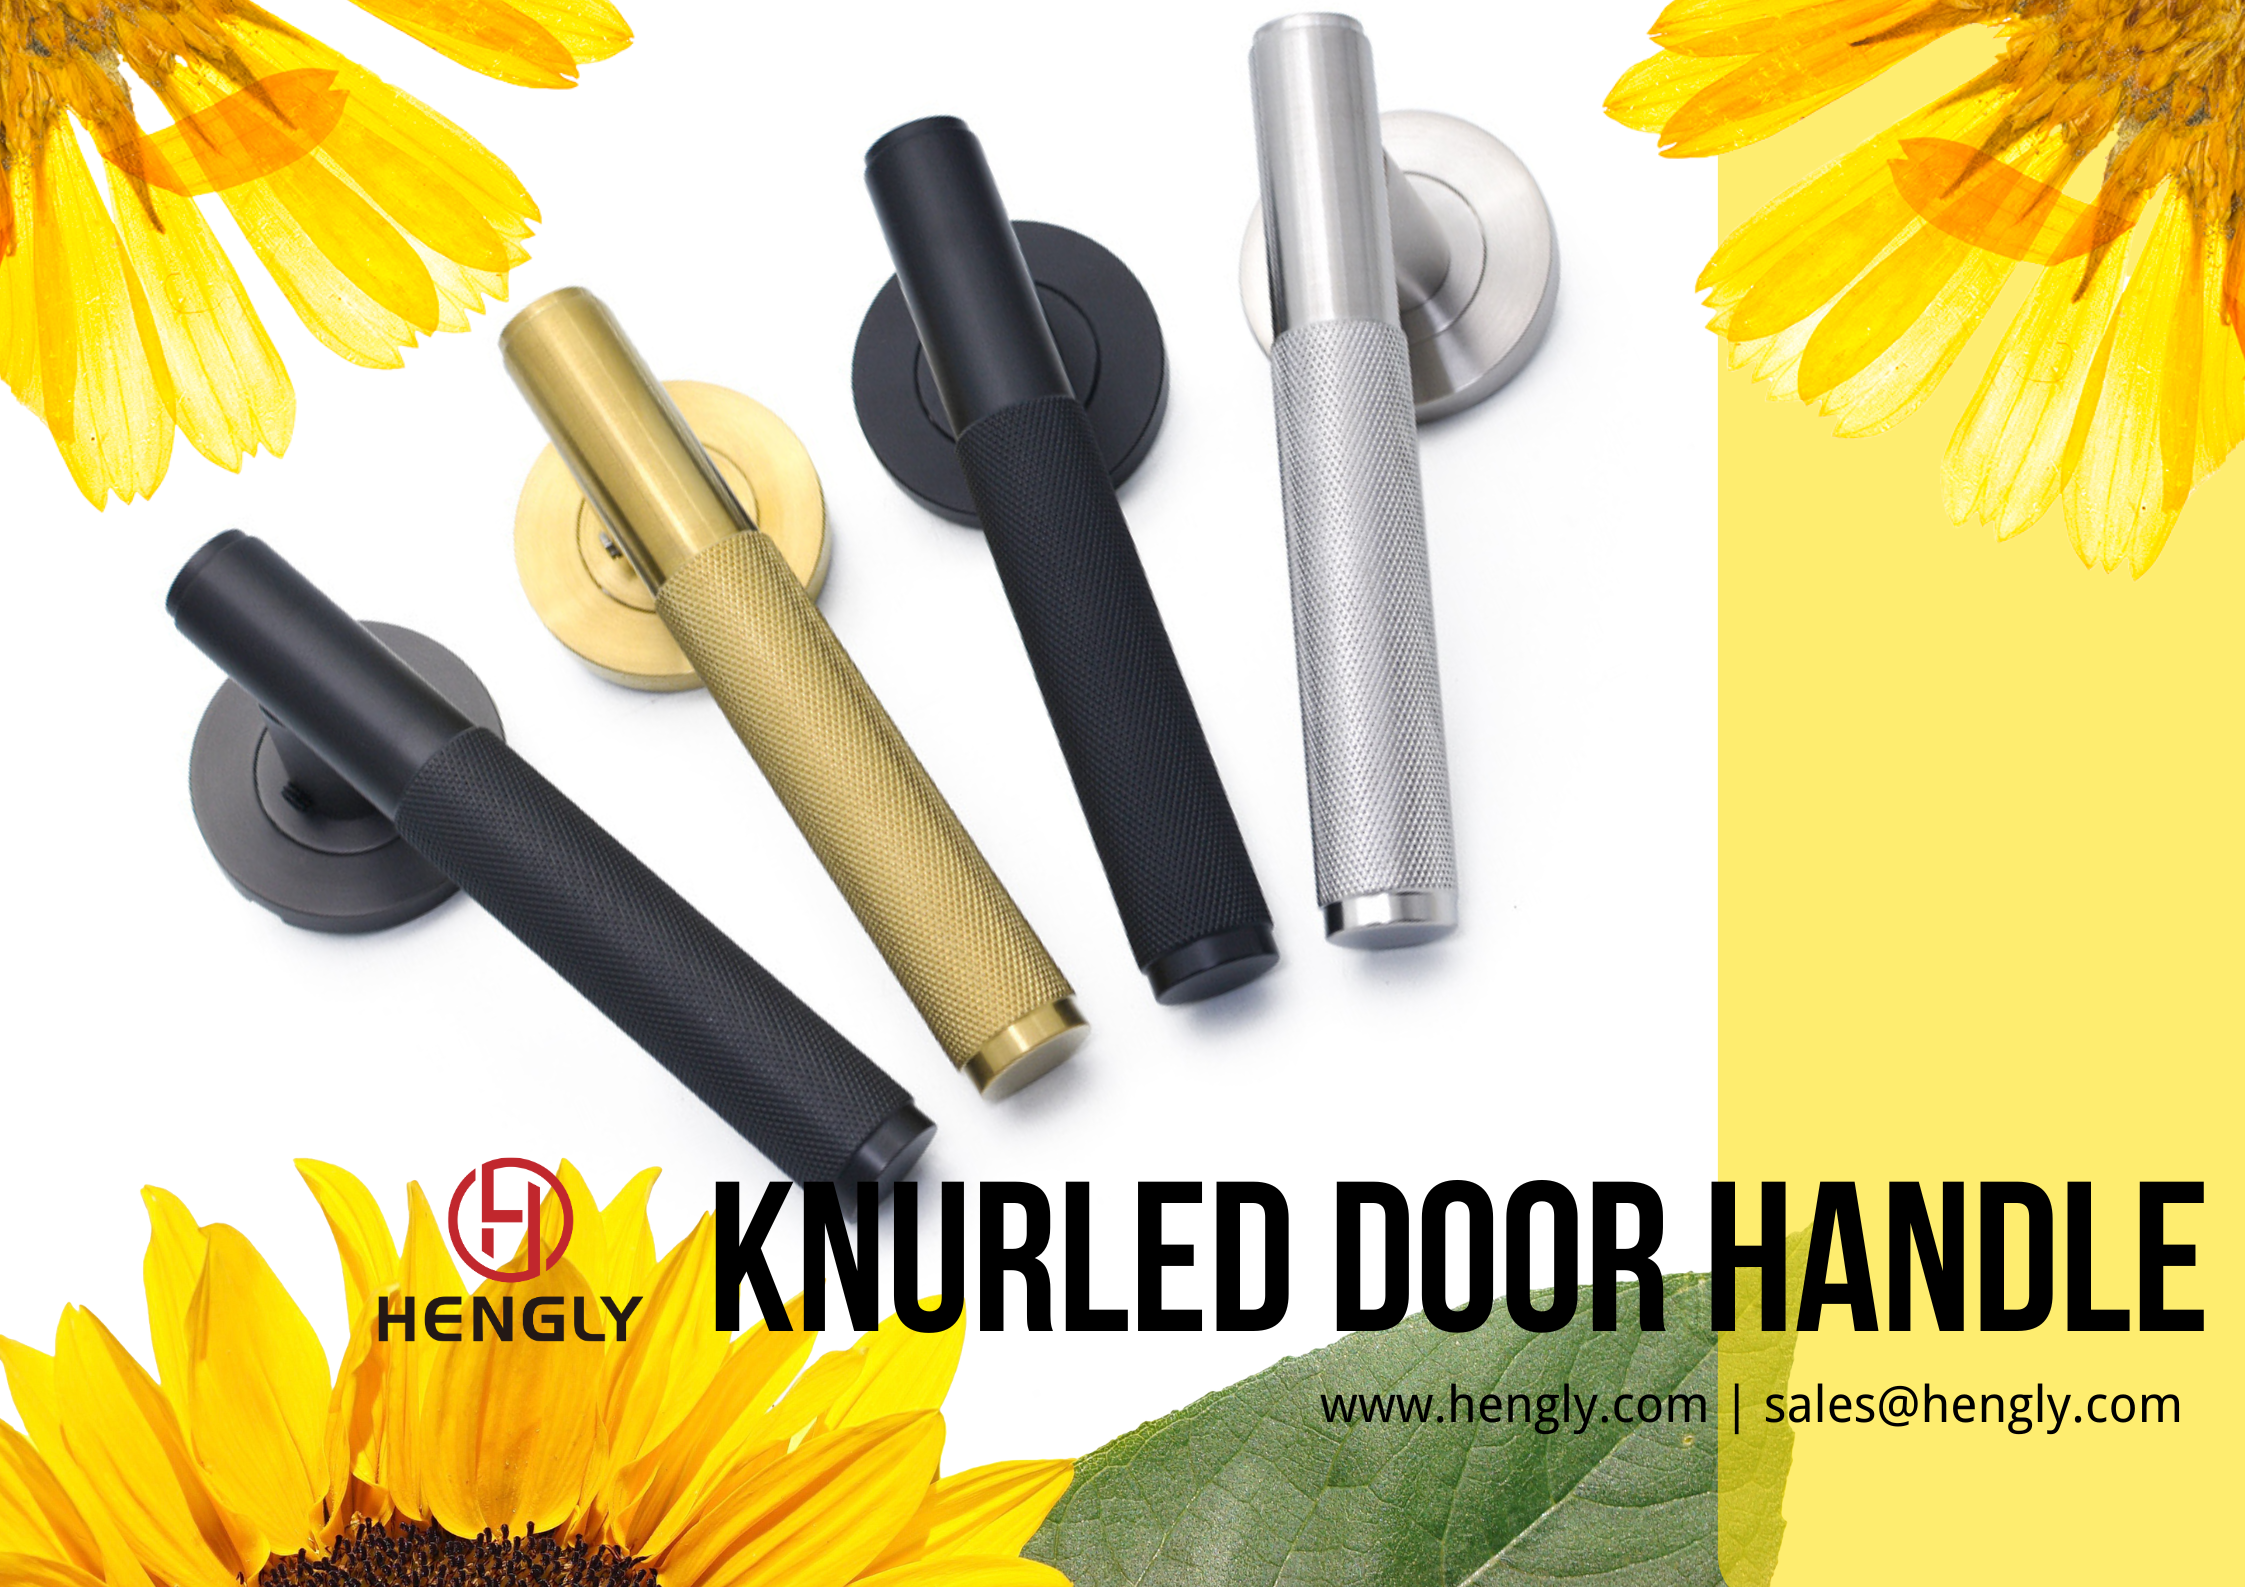 Knurled door handle series-Hengly.png